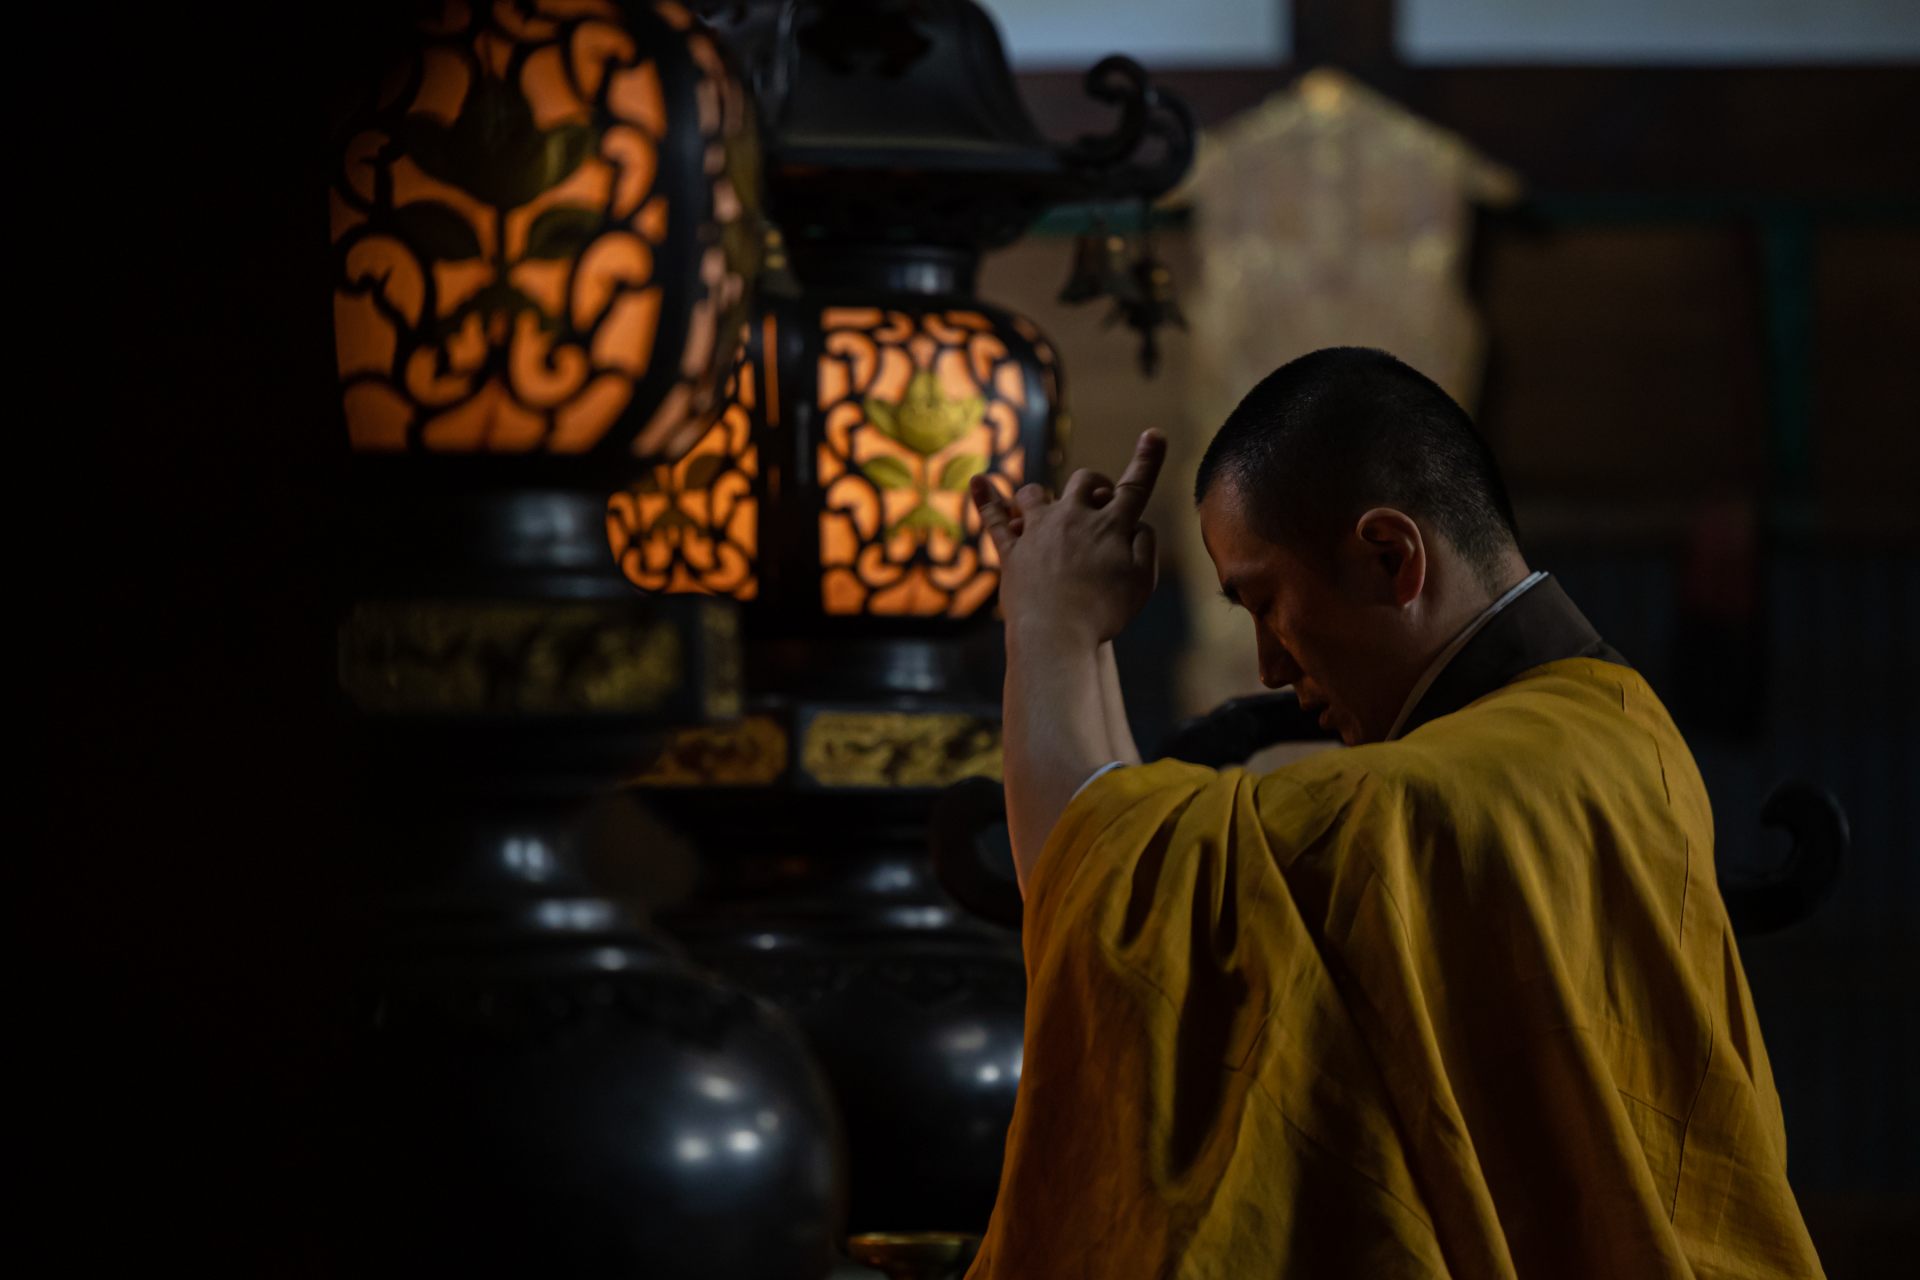 Le service est effectué par les gestes du maître conformément à l'étiquette cérémonielle du bouddhisme ésotérique Tendai.